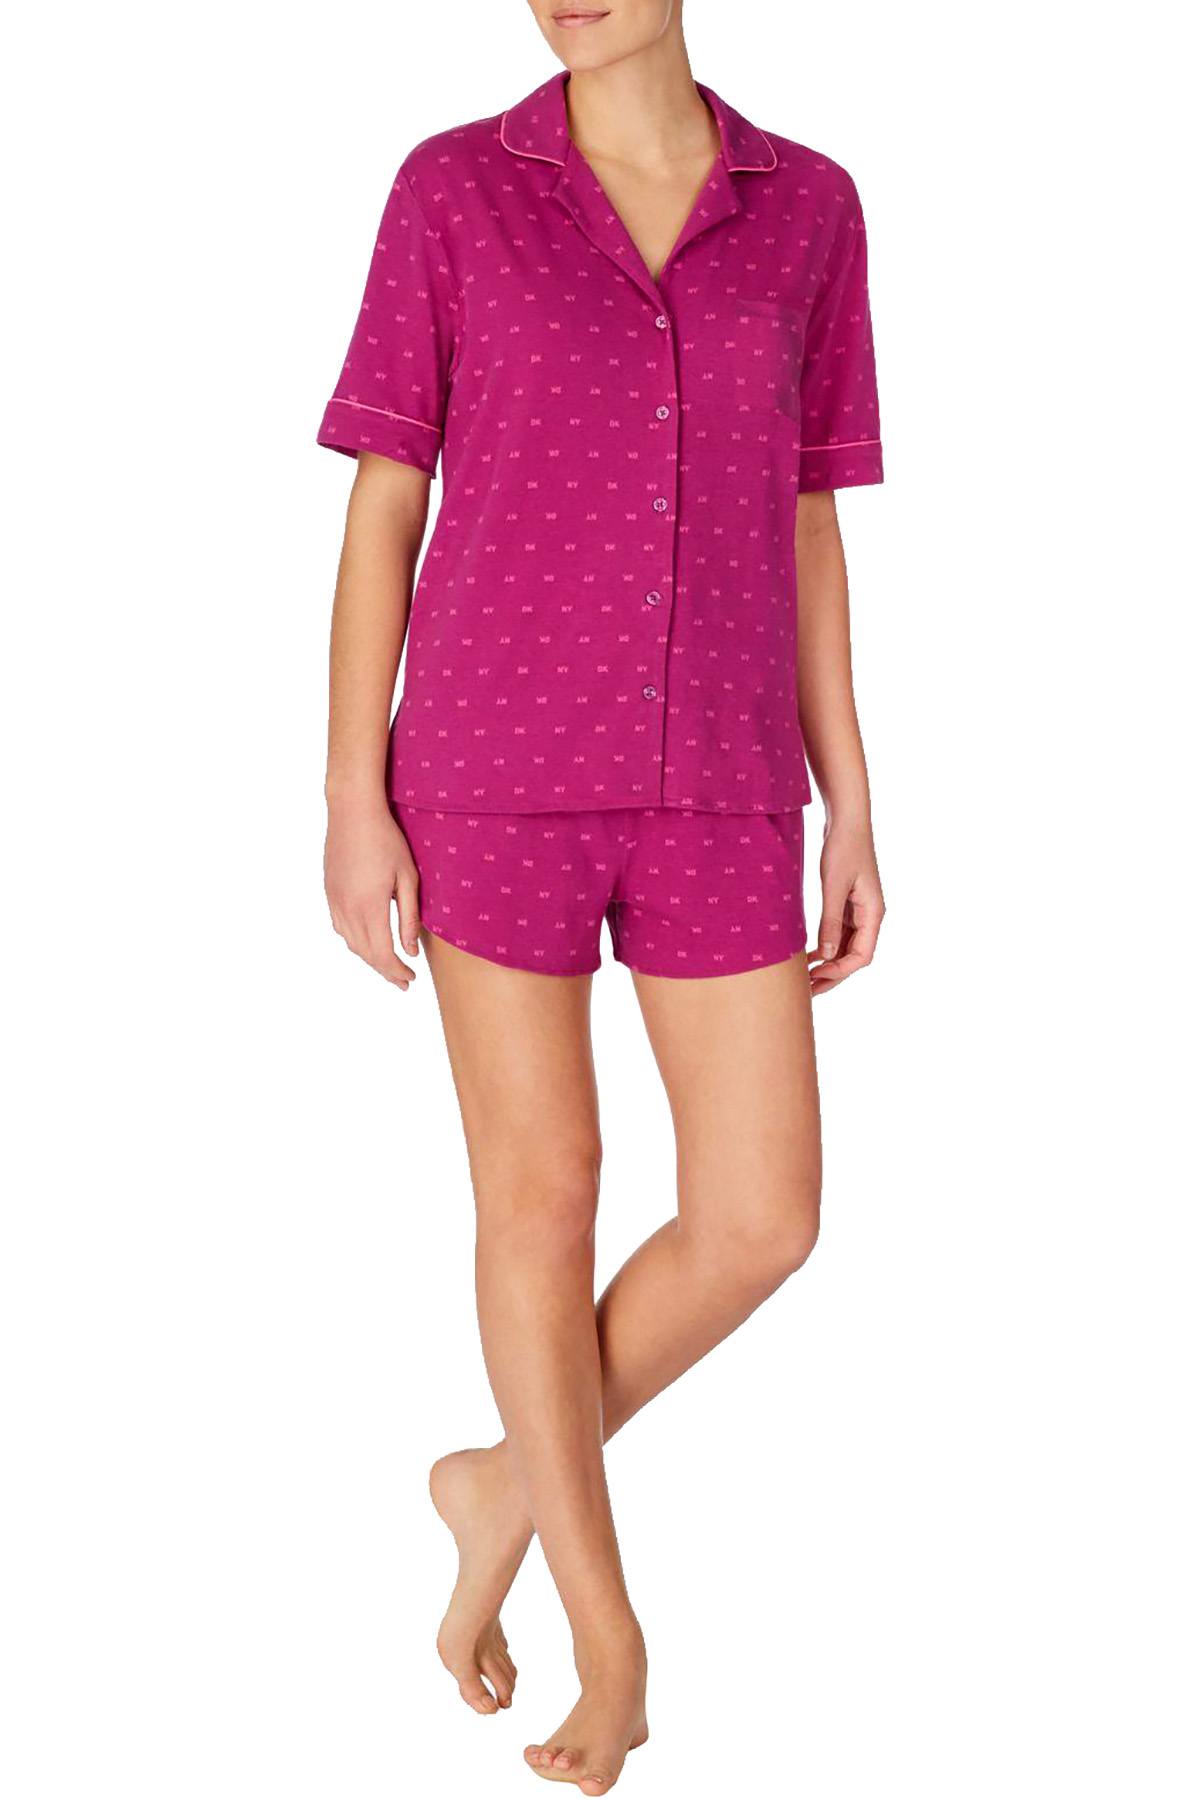 DKNY Berry Logo Notch Collar Top / Boxer Short Pajama Set